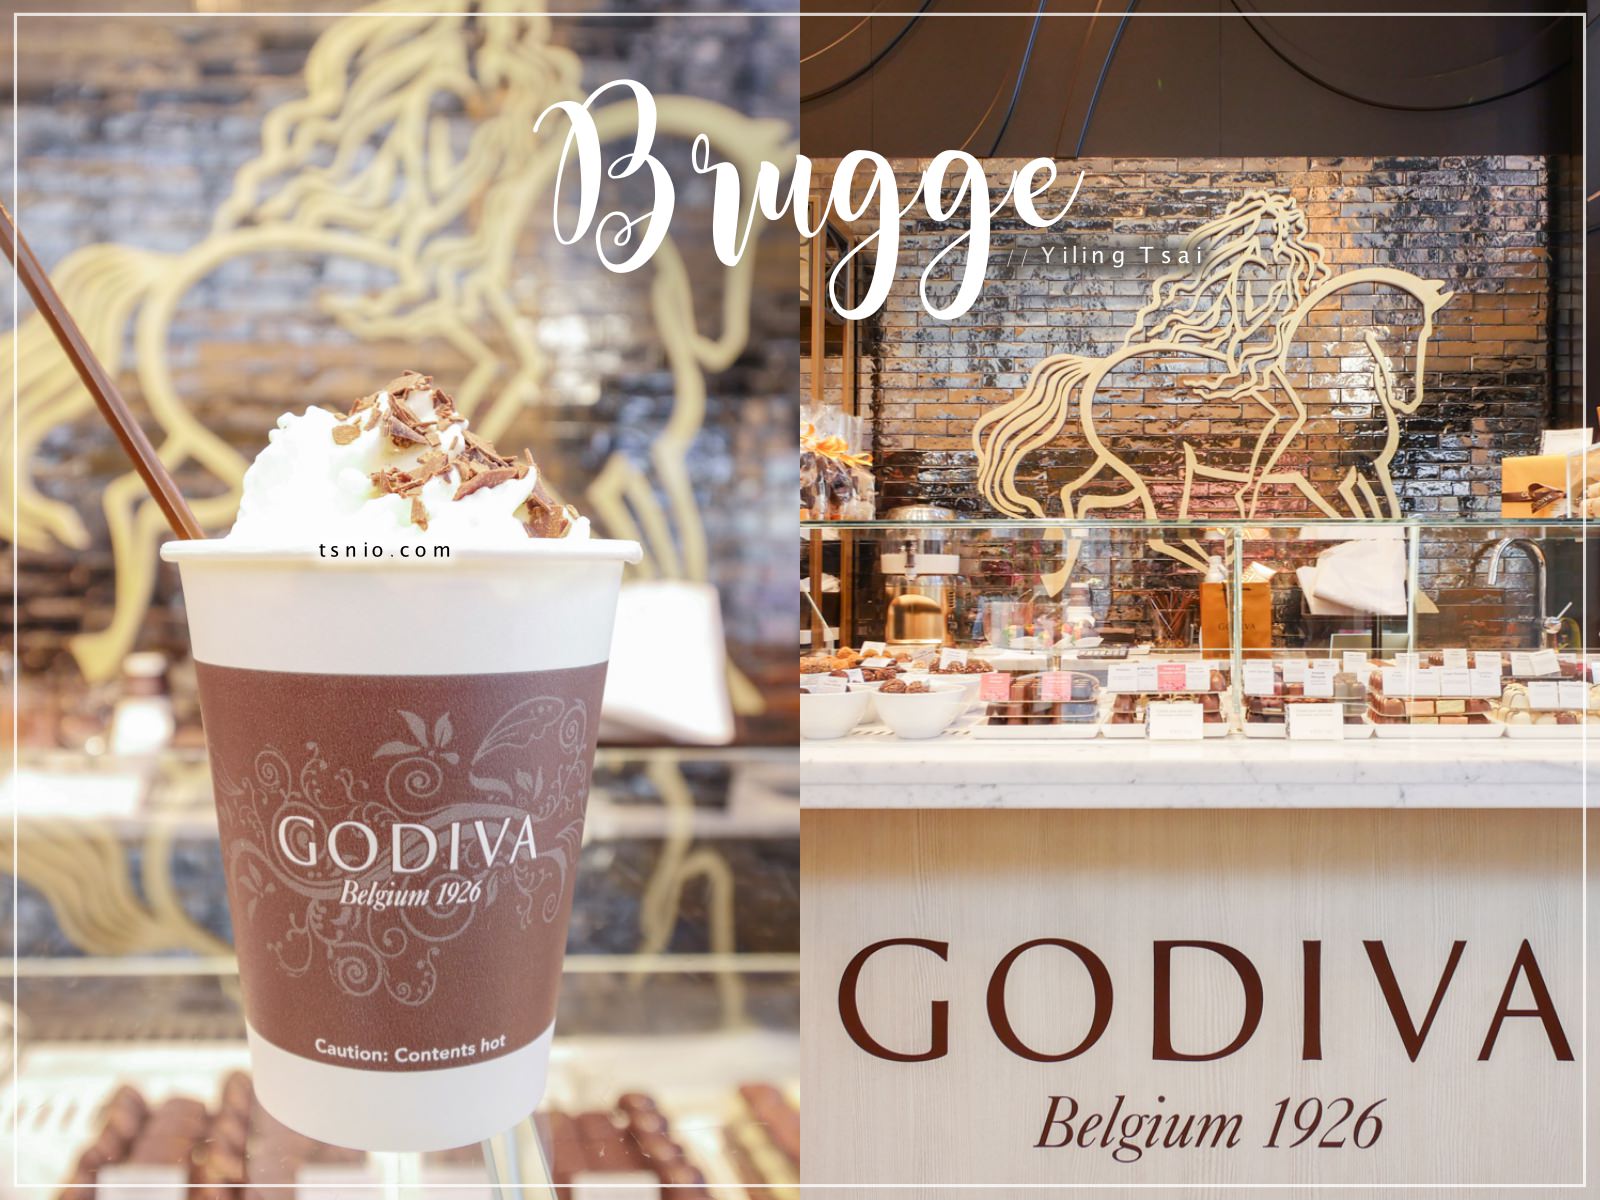 比利時巧克力 Godiva 全球知名巧克力品牌